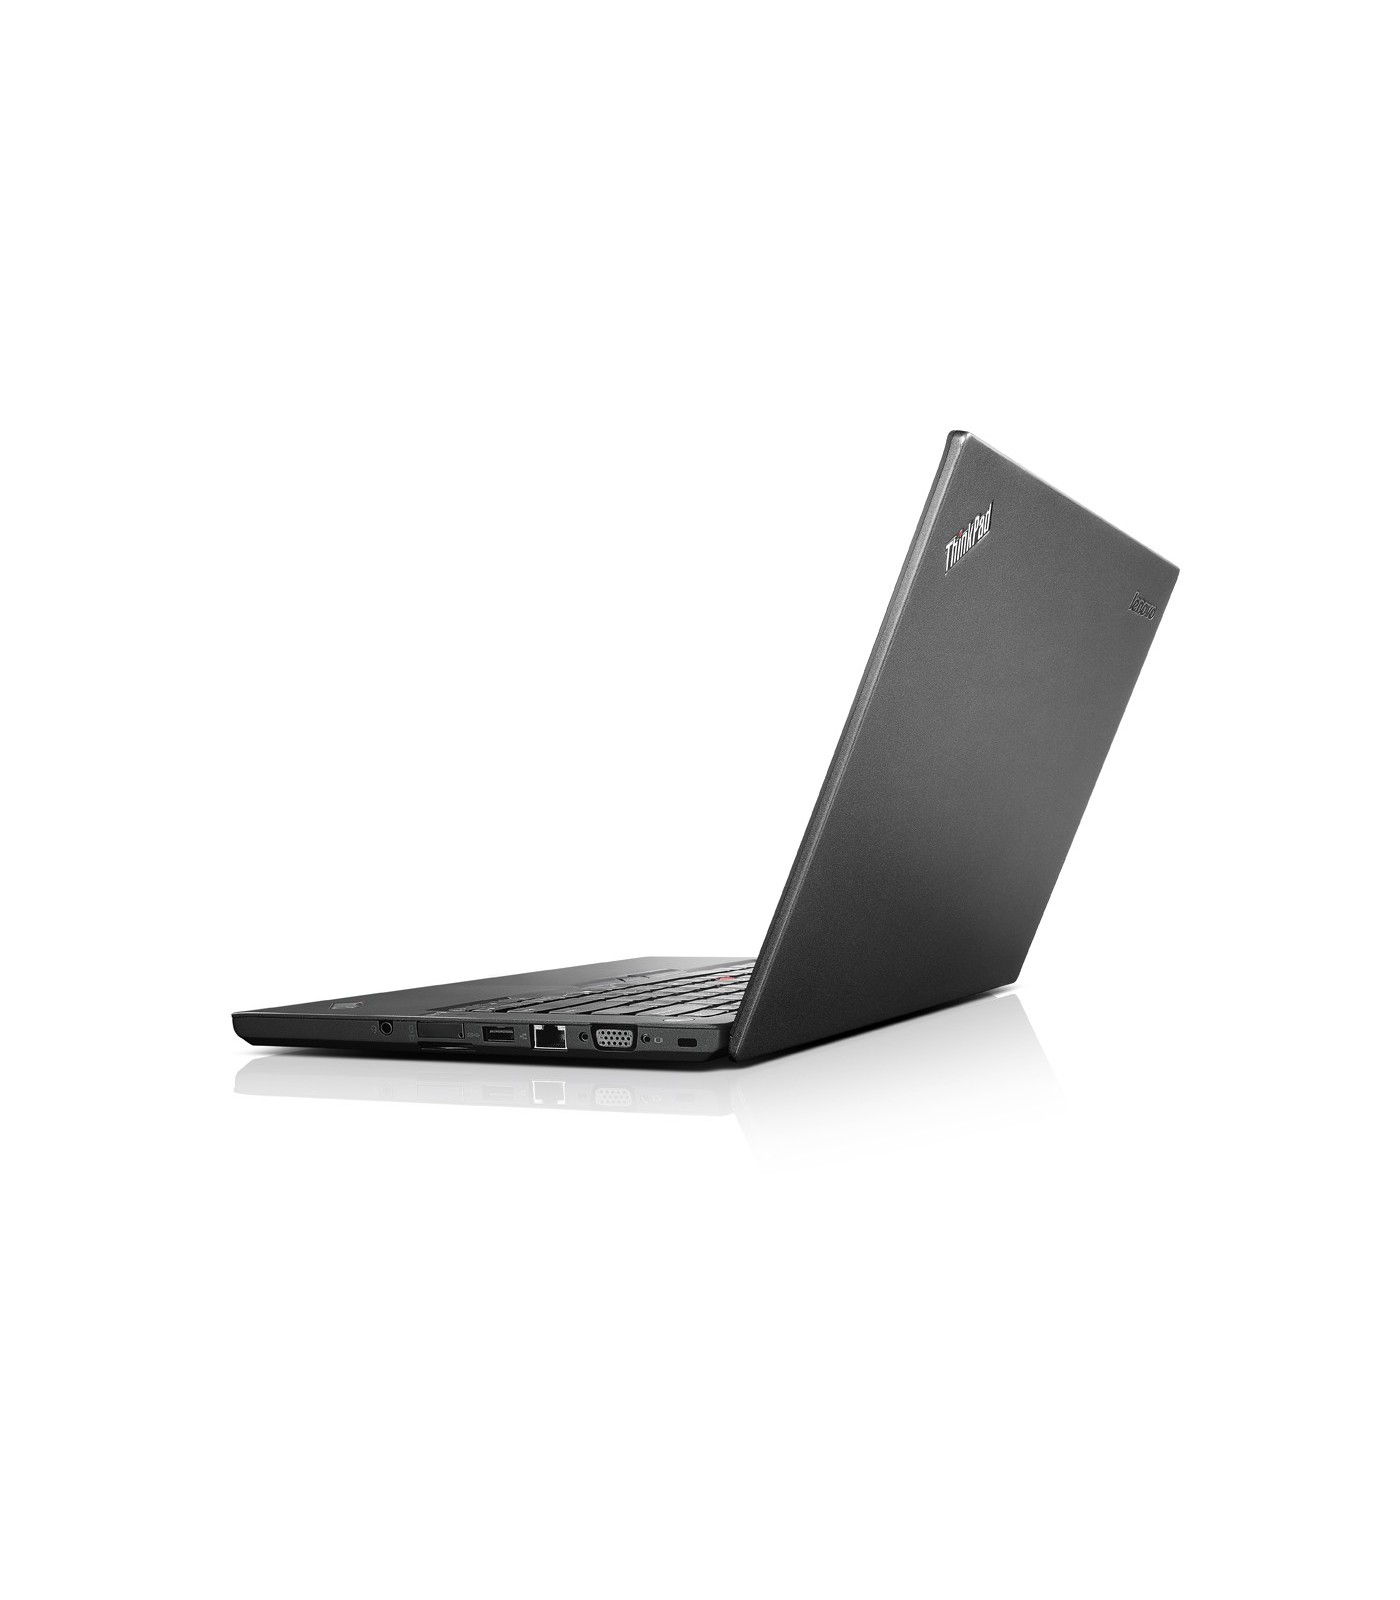 Poleasingowy laptop Lenovo ThinkPad T450s z Intel Core i5-5300U w Klasie A